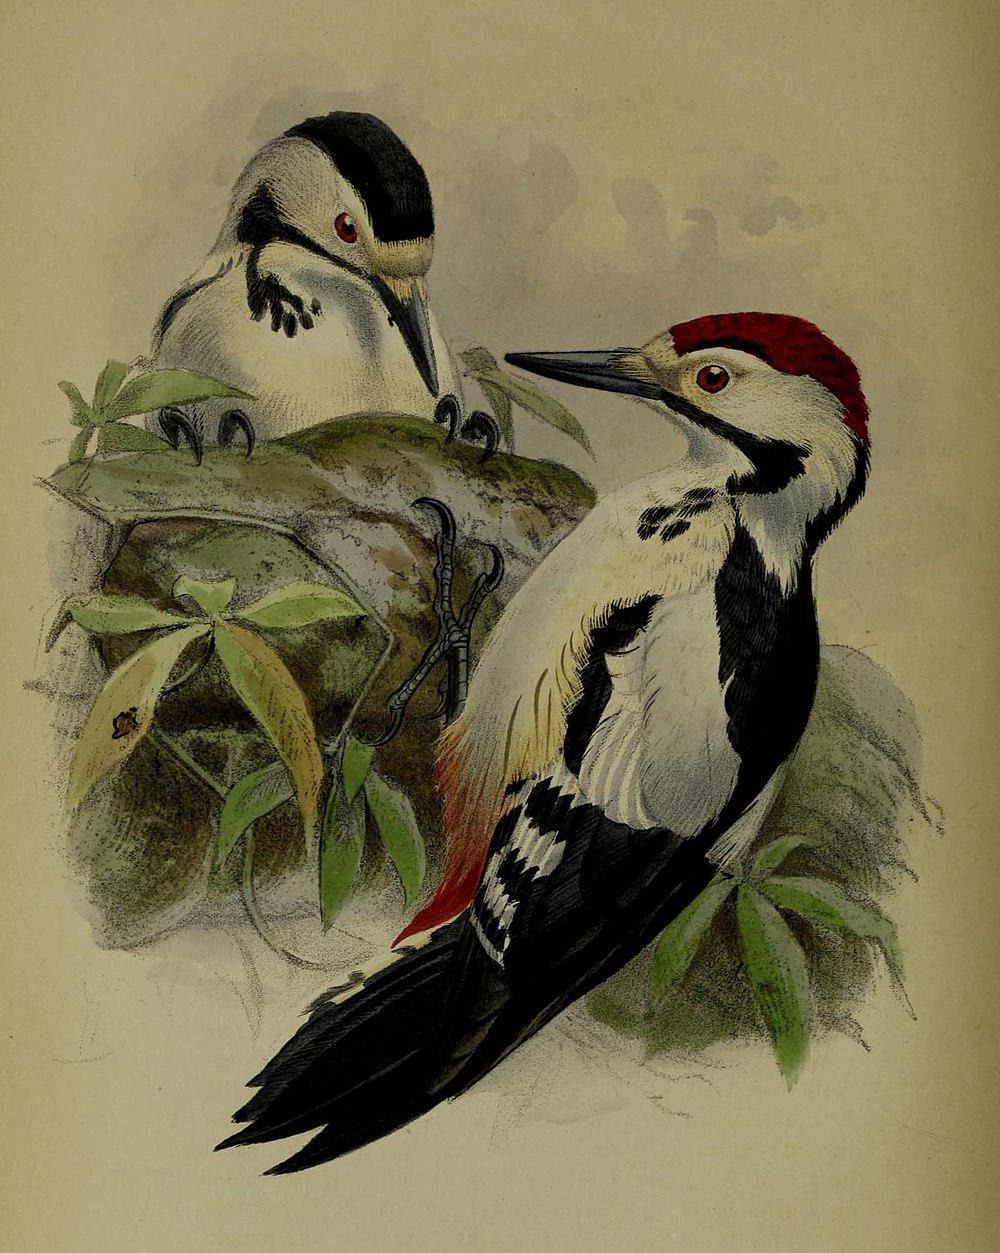 信德啄木鸟 / Sind Woodpecker / Dendrocopos assimilis